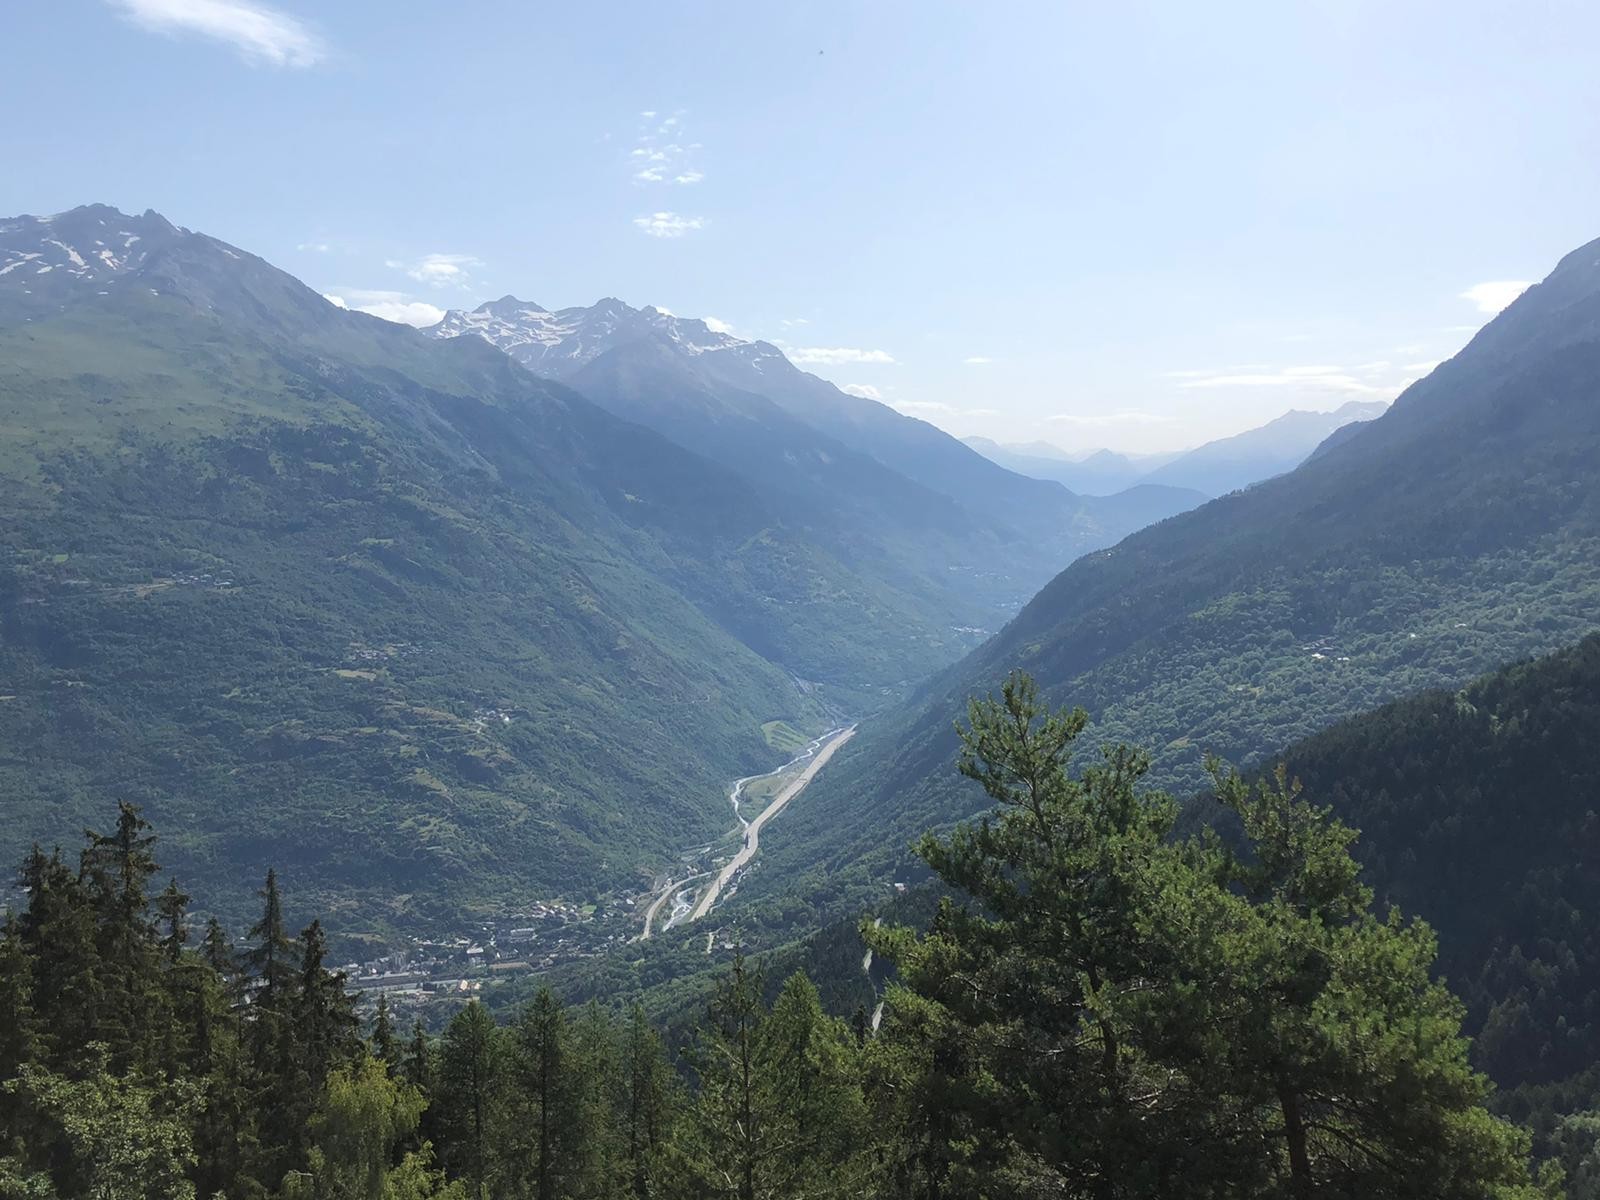  4ème étape Saint Michel de Maurienne-Salle les Alpes 